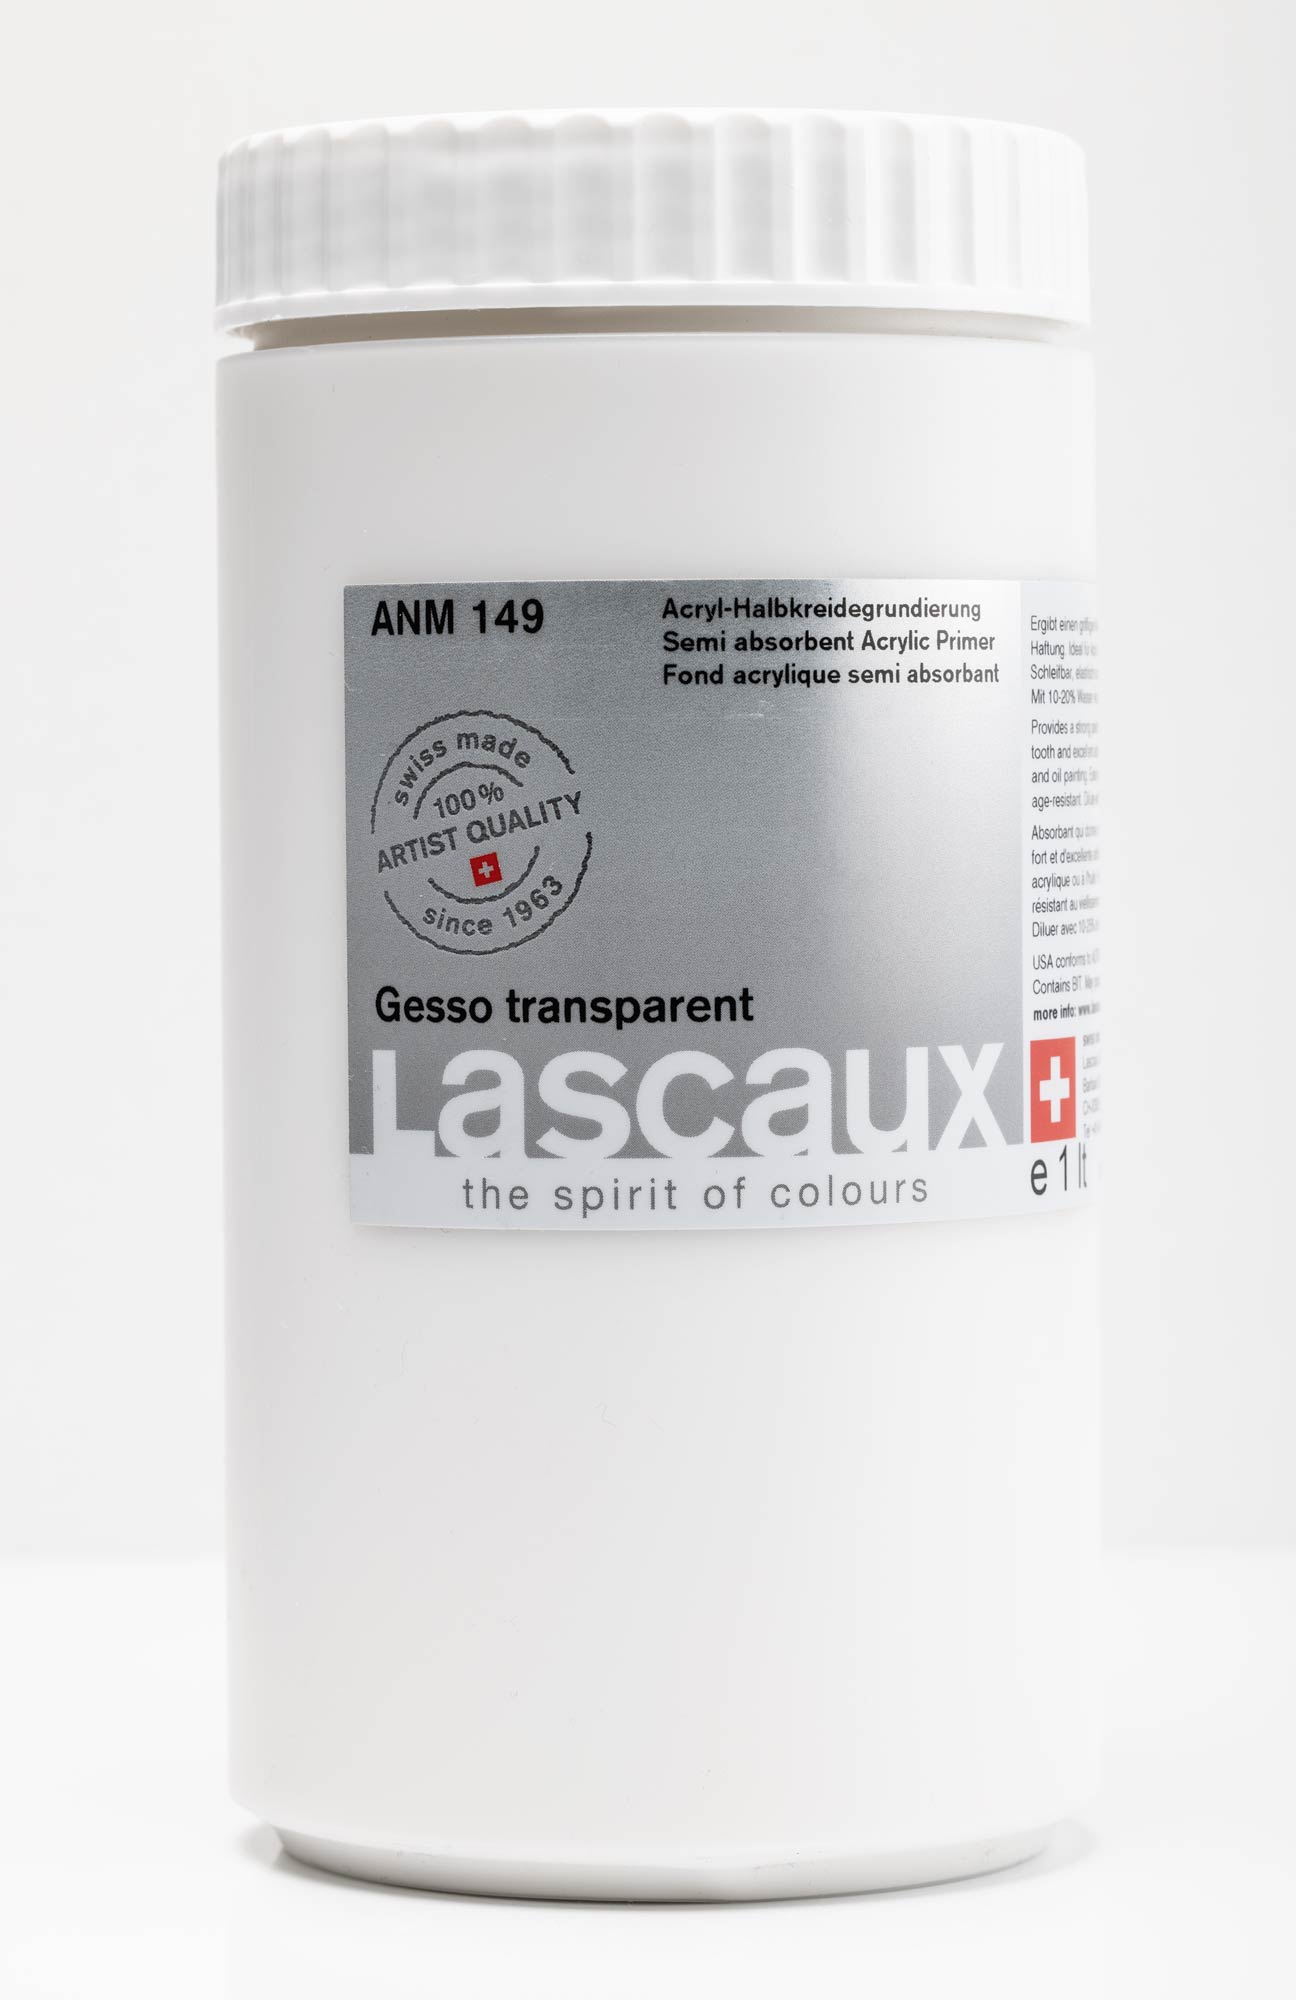 Lascaux Gesso transparent (2021)